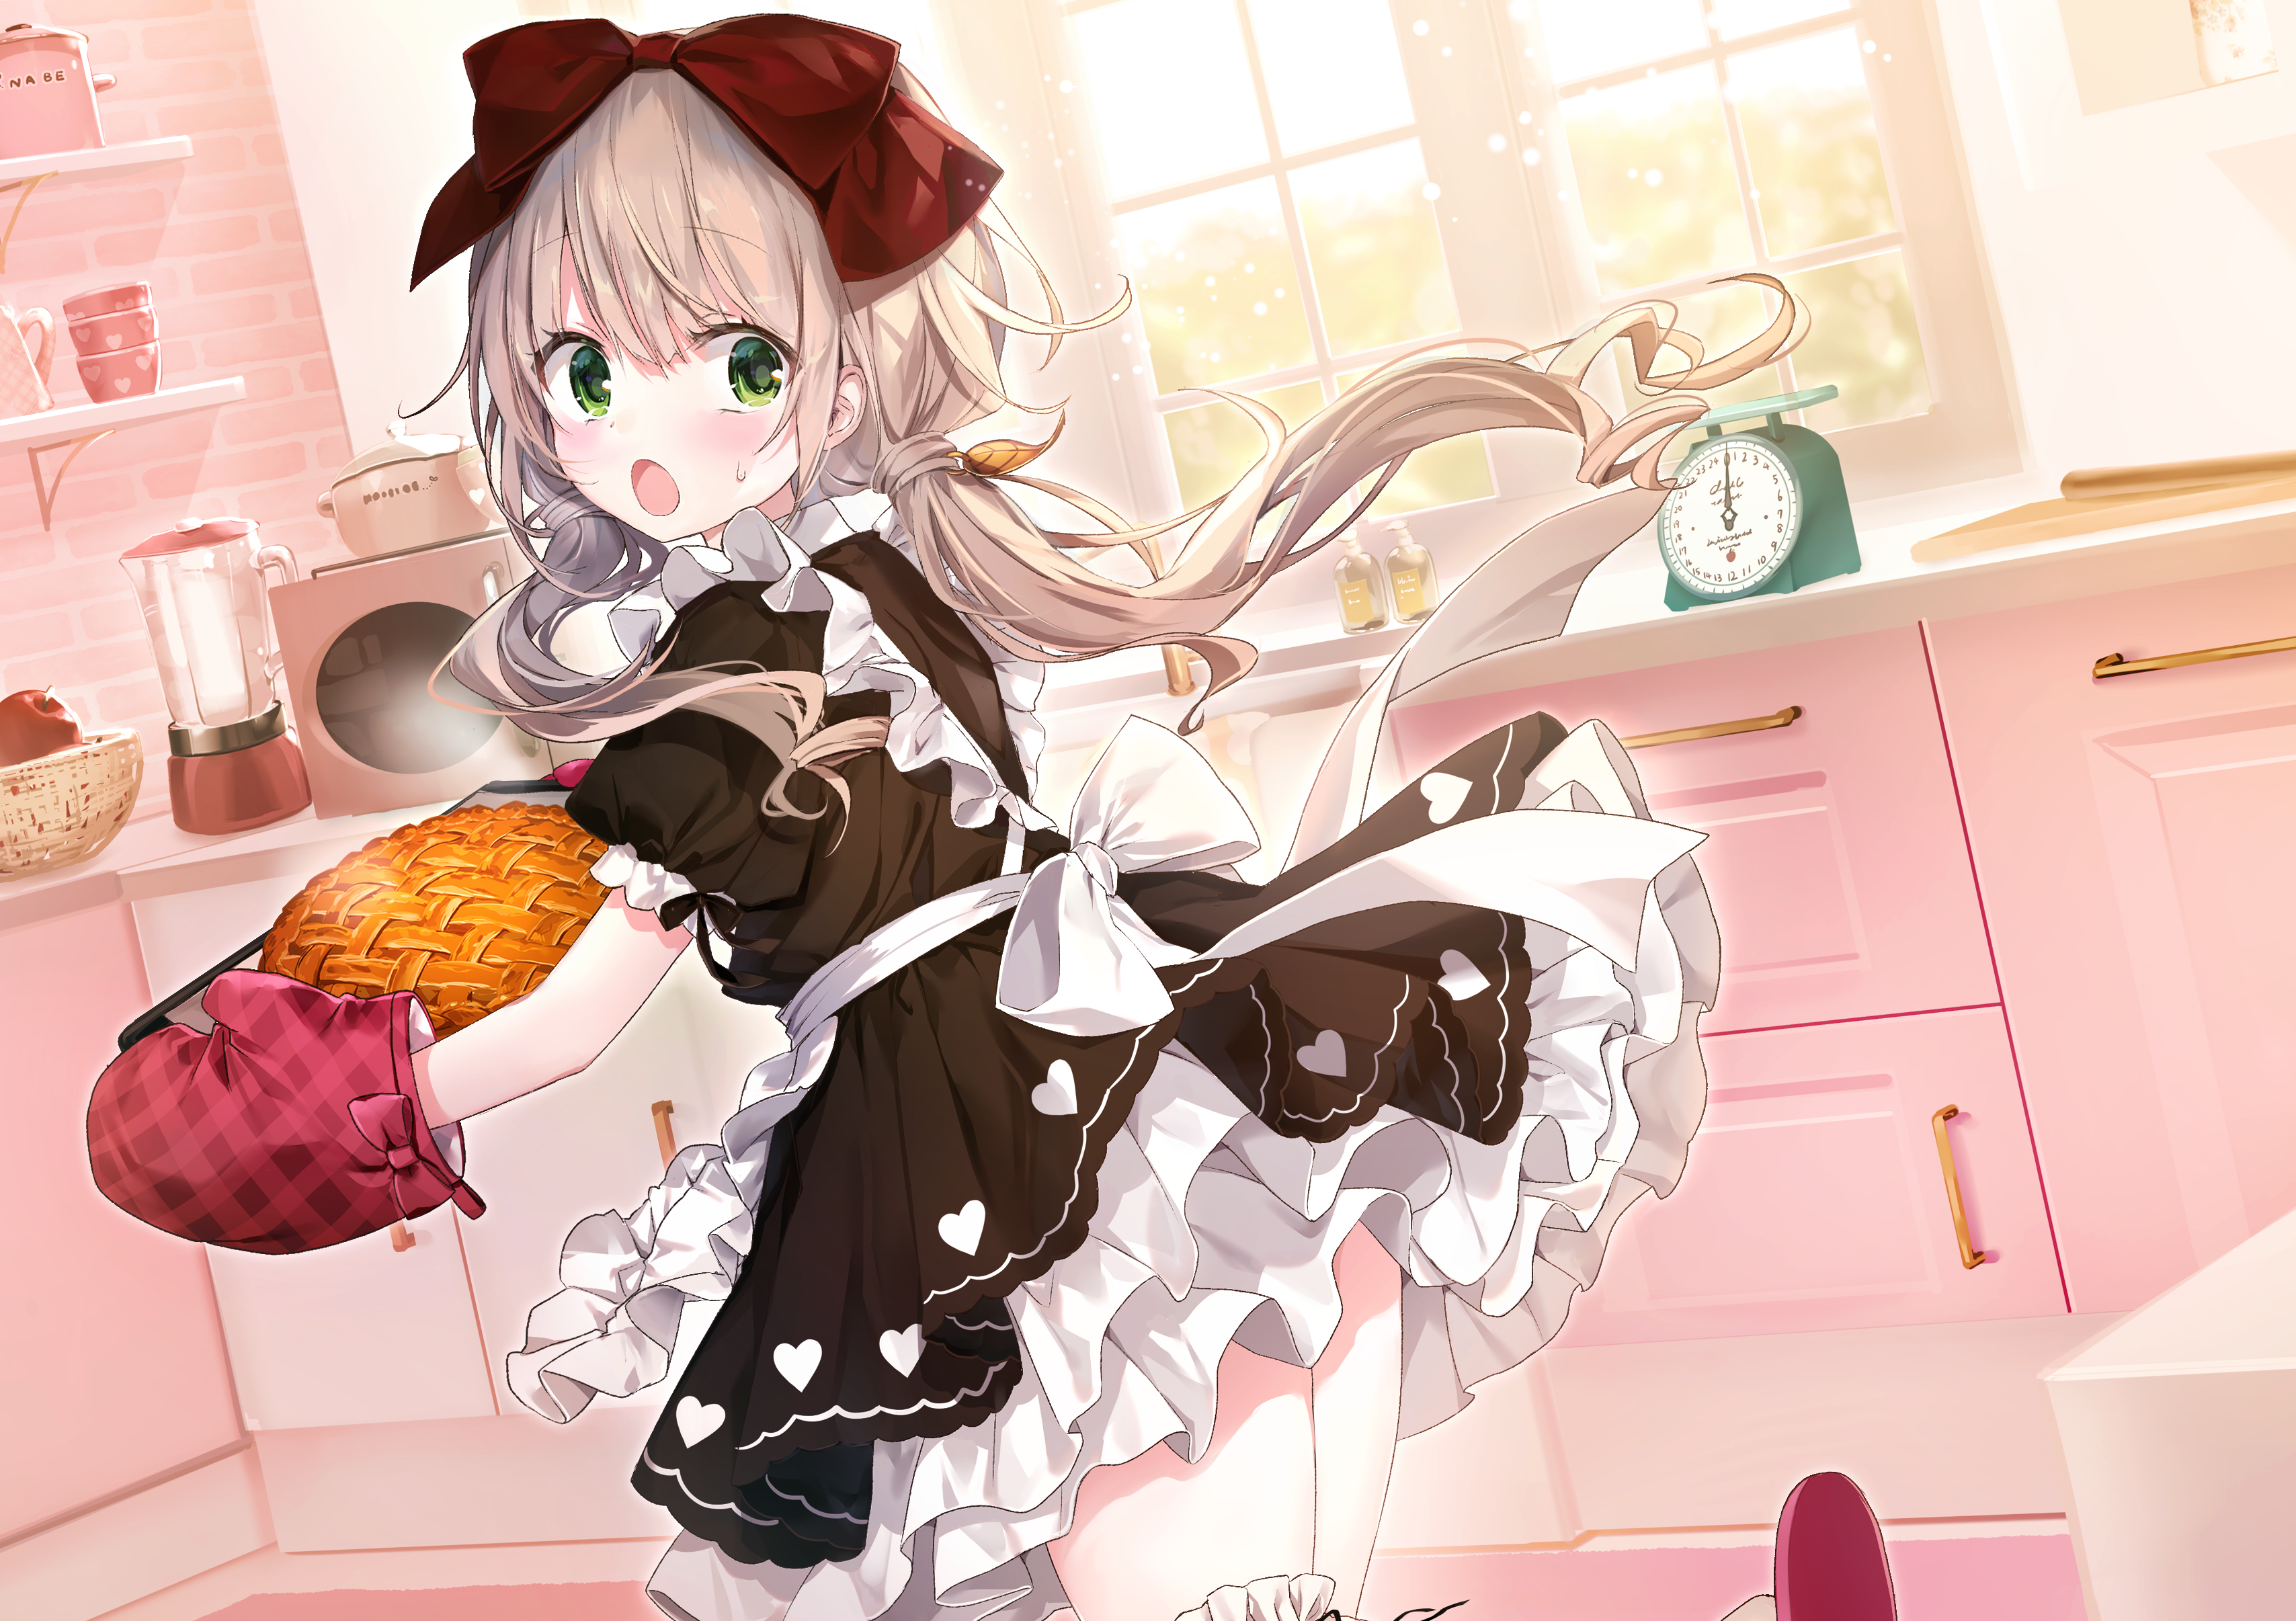 Zastaki.com - Девушка аниме на кухне с пирогом